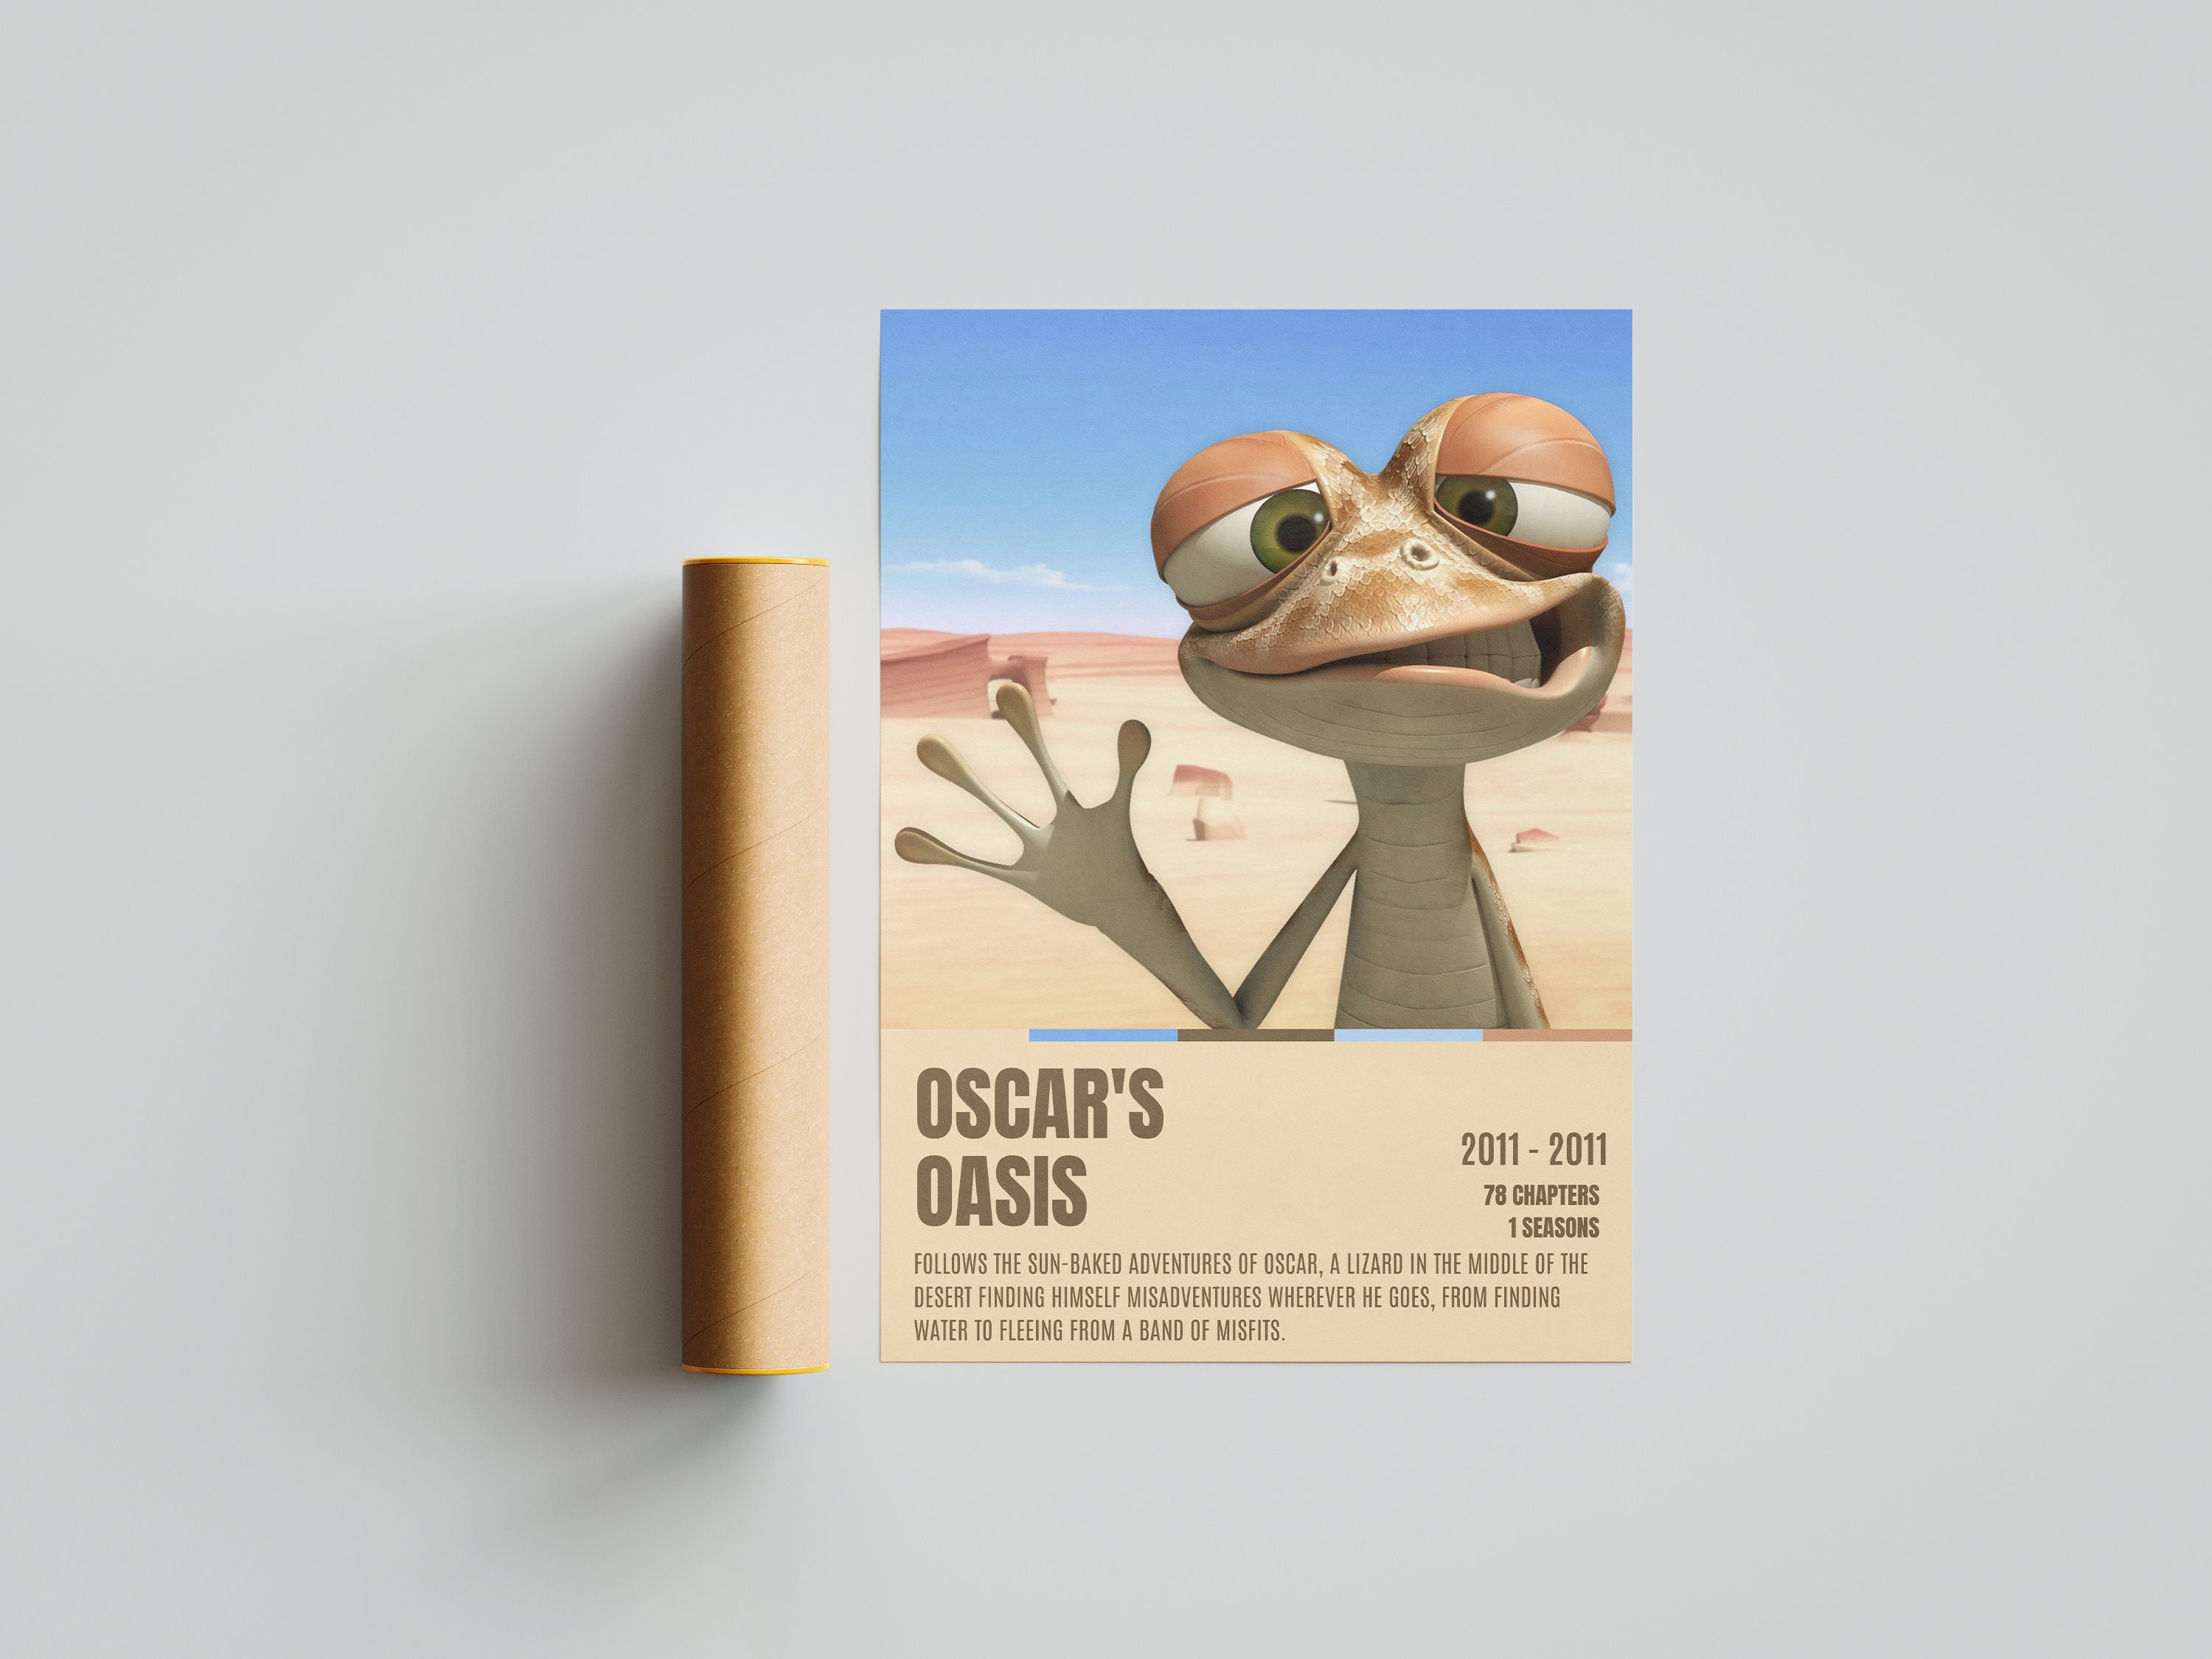 Oscars Oasis 